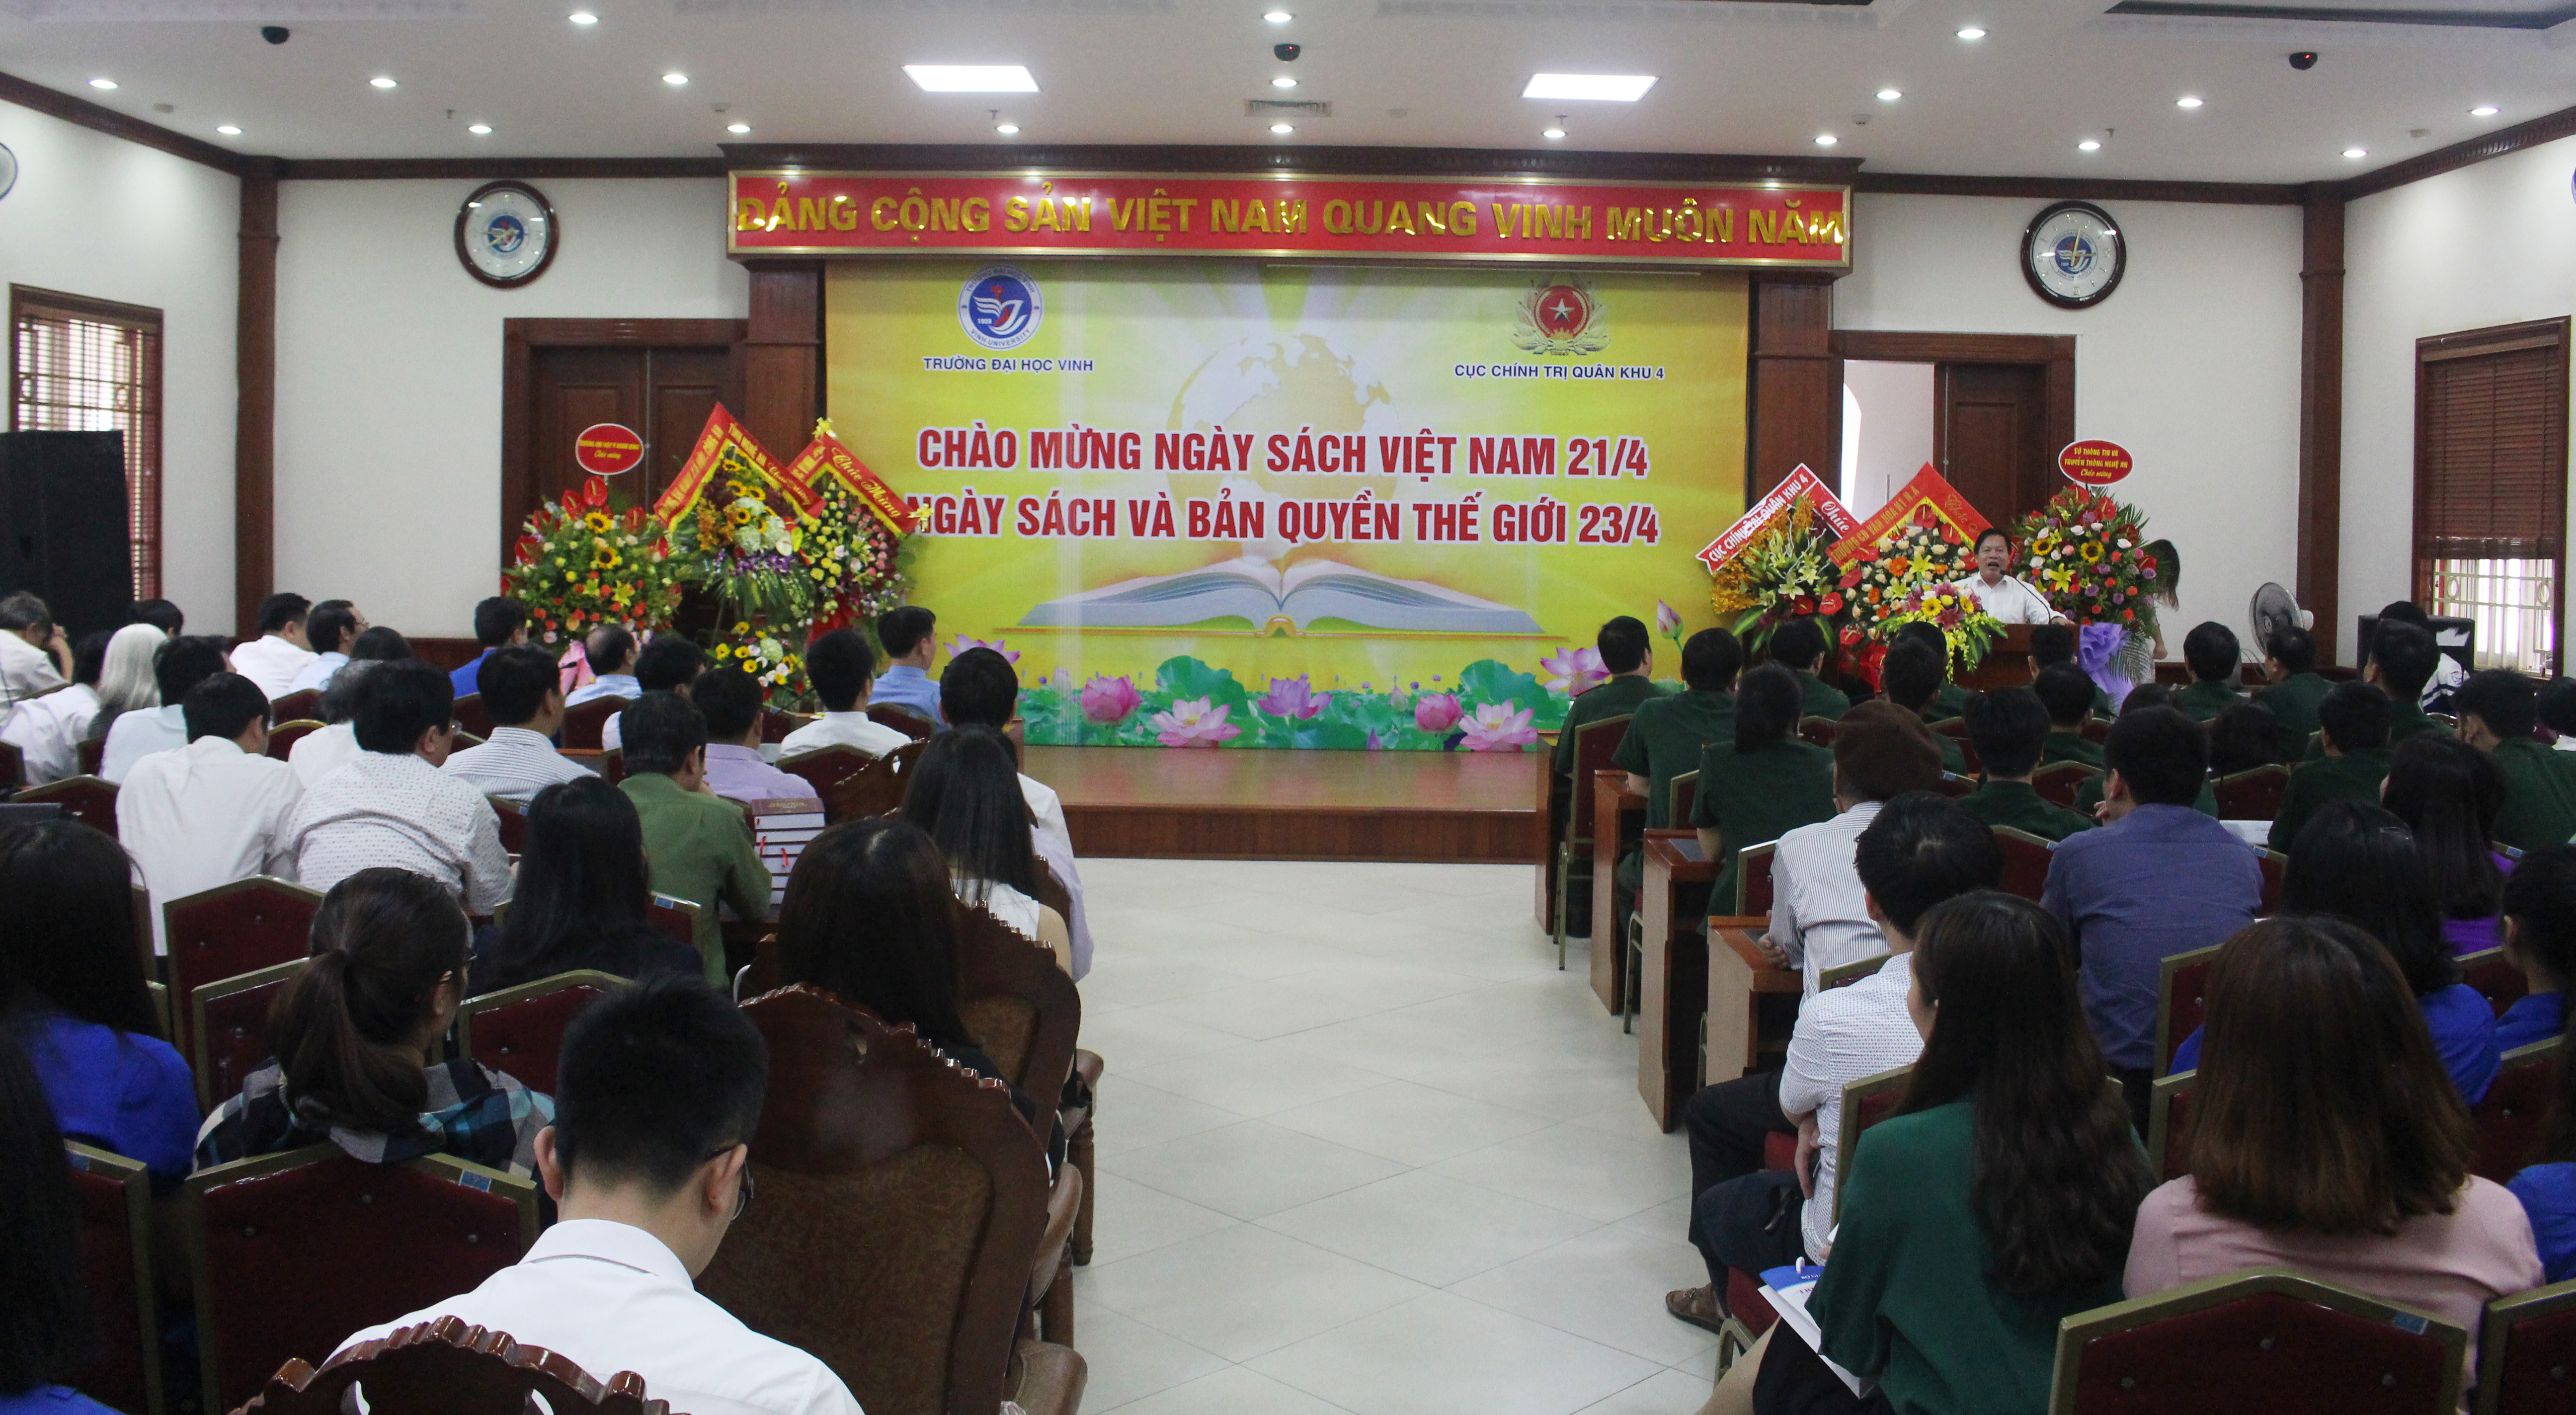 Trường đại hội Vinh phối hợp với Cục chính trị Quân khu 4 tổ chức tọa đàm chào mừng ngày sách Việt Nam. Ảnh: Phương Thảo